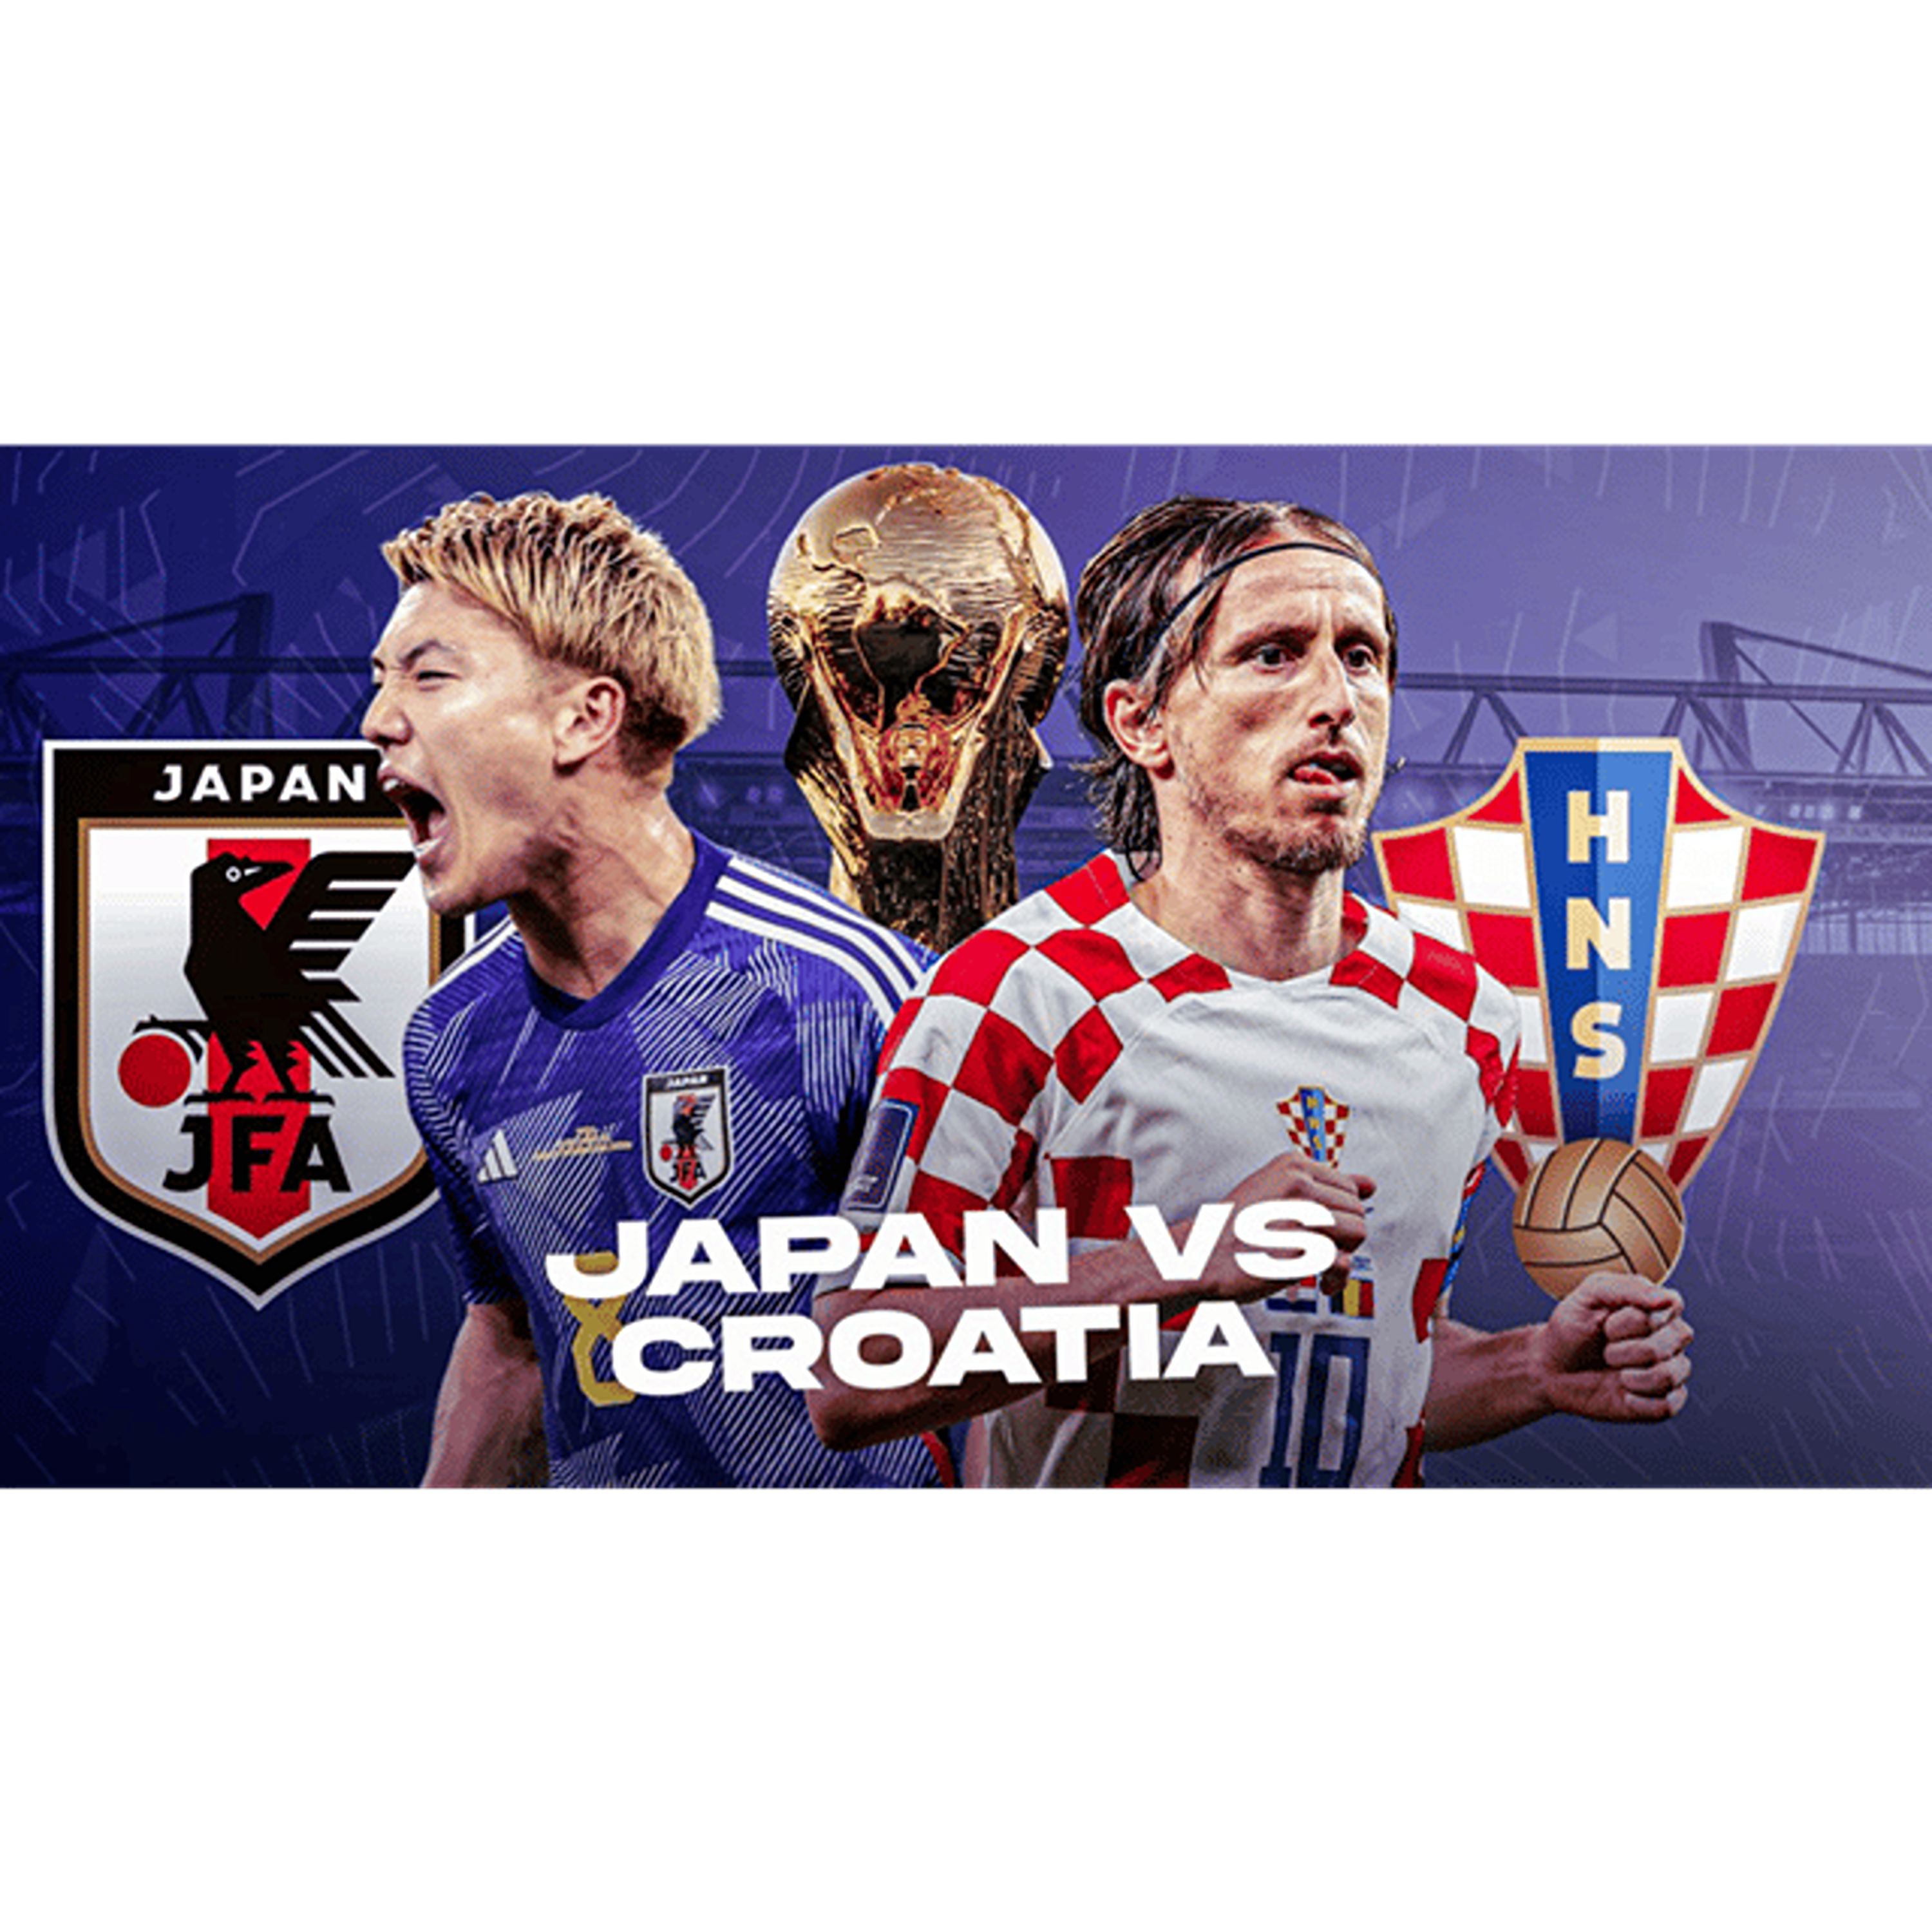 生中継 日本vsクロアチア 生中継 22年12月5日 By Jatajoh Cnogs Zencastr